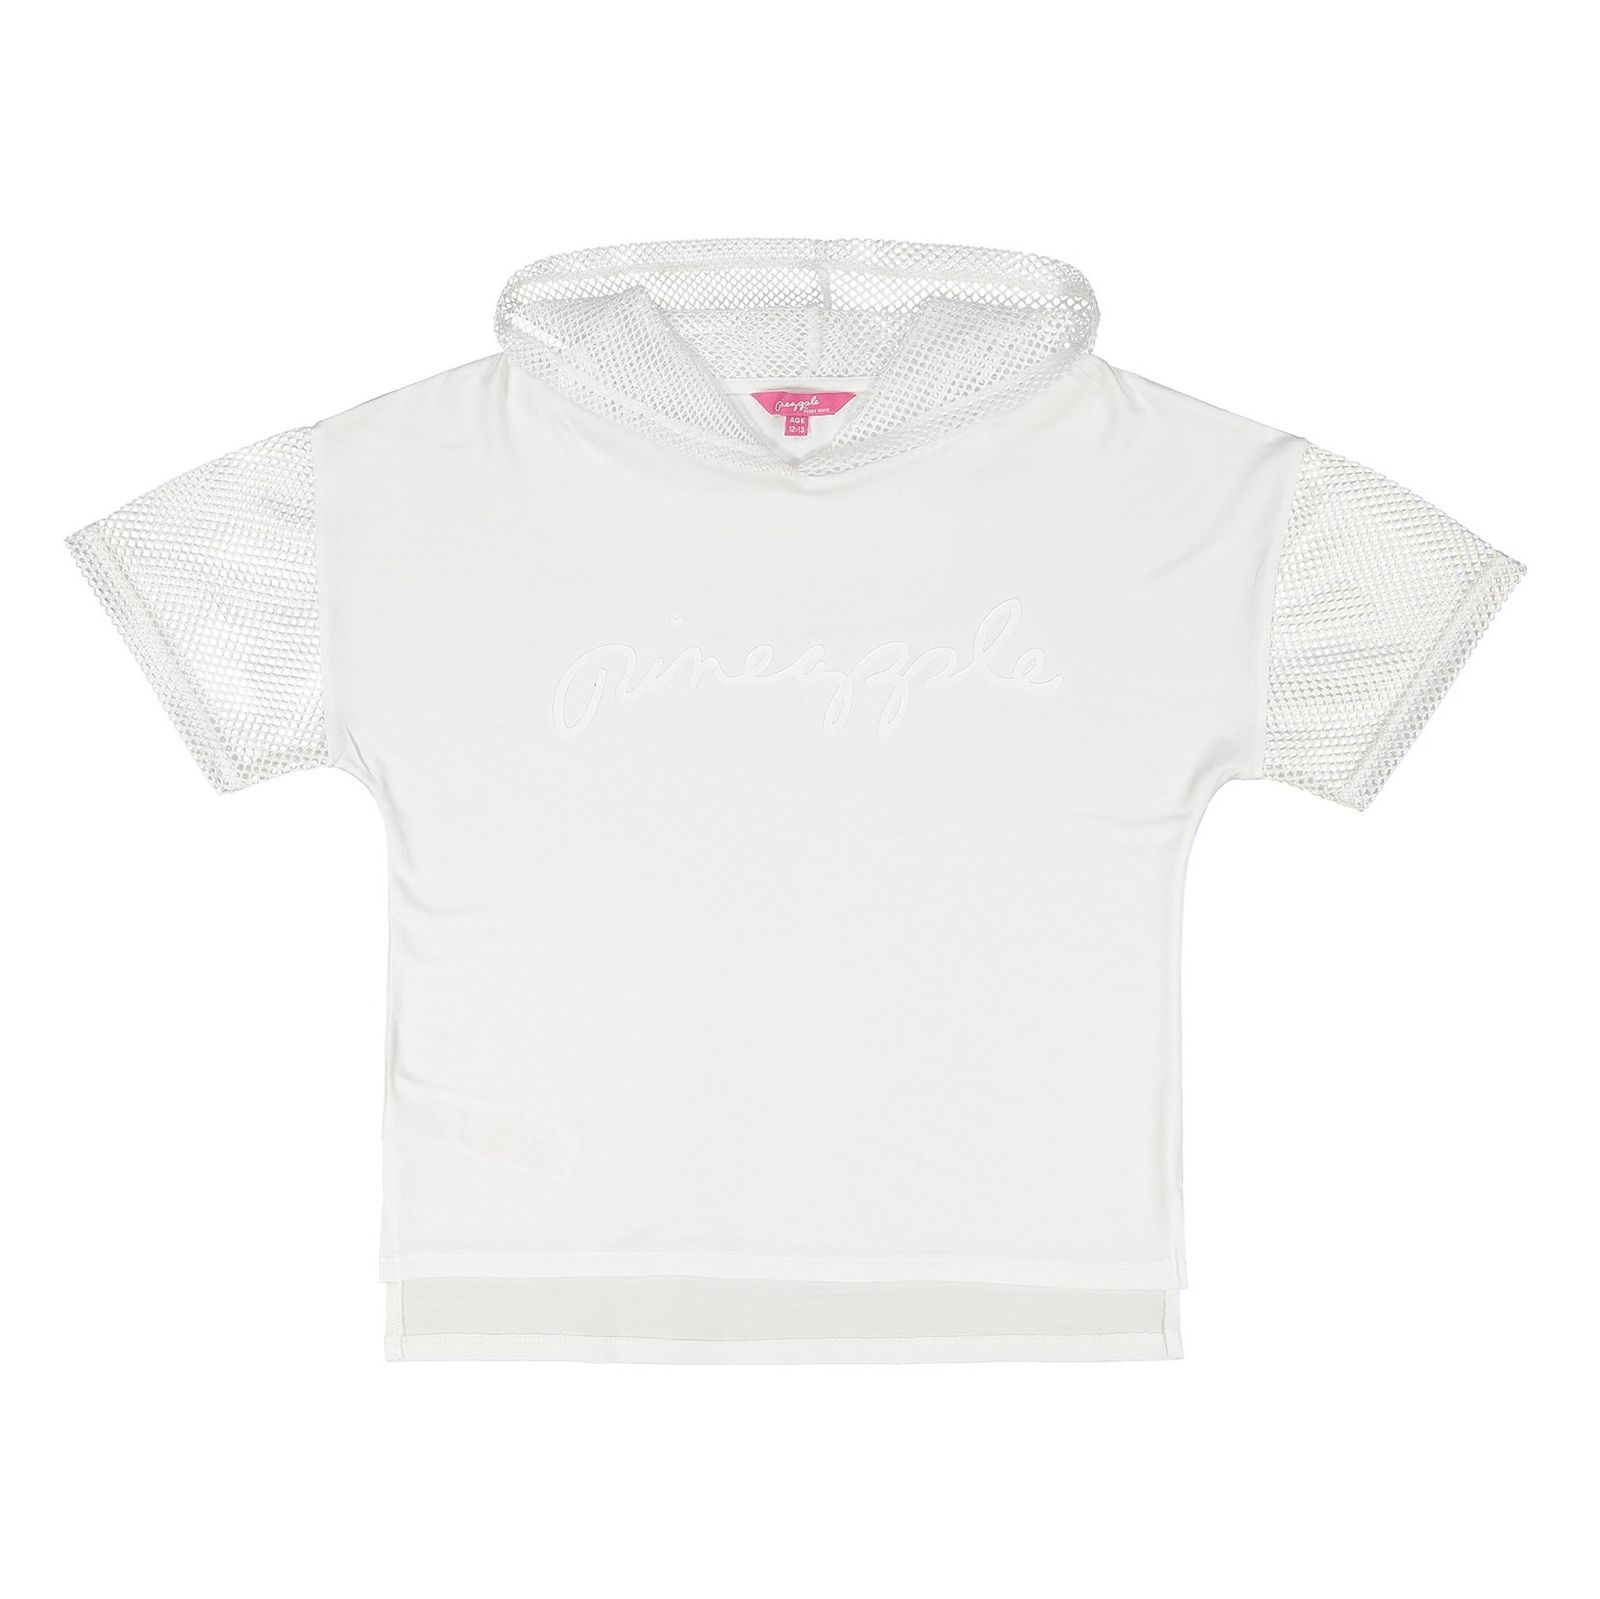 تی شرت ویسکوز یقه گرد دخترانه - دبنهامز - سفيد - 2